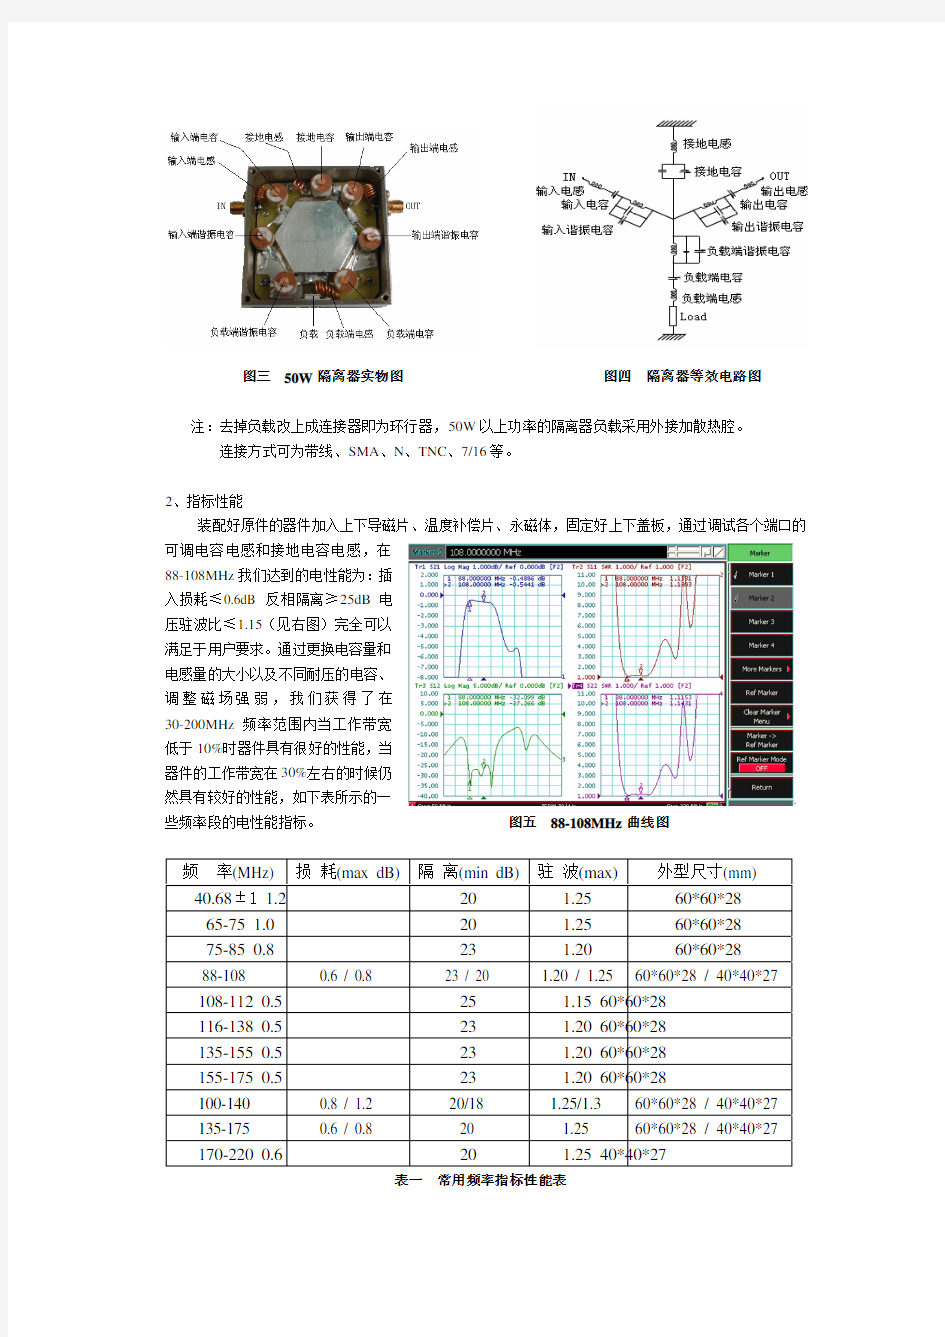 VHF频段低频集中参数射频铁氧体隔离器、环行器